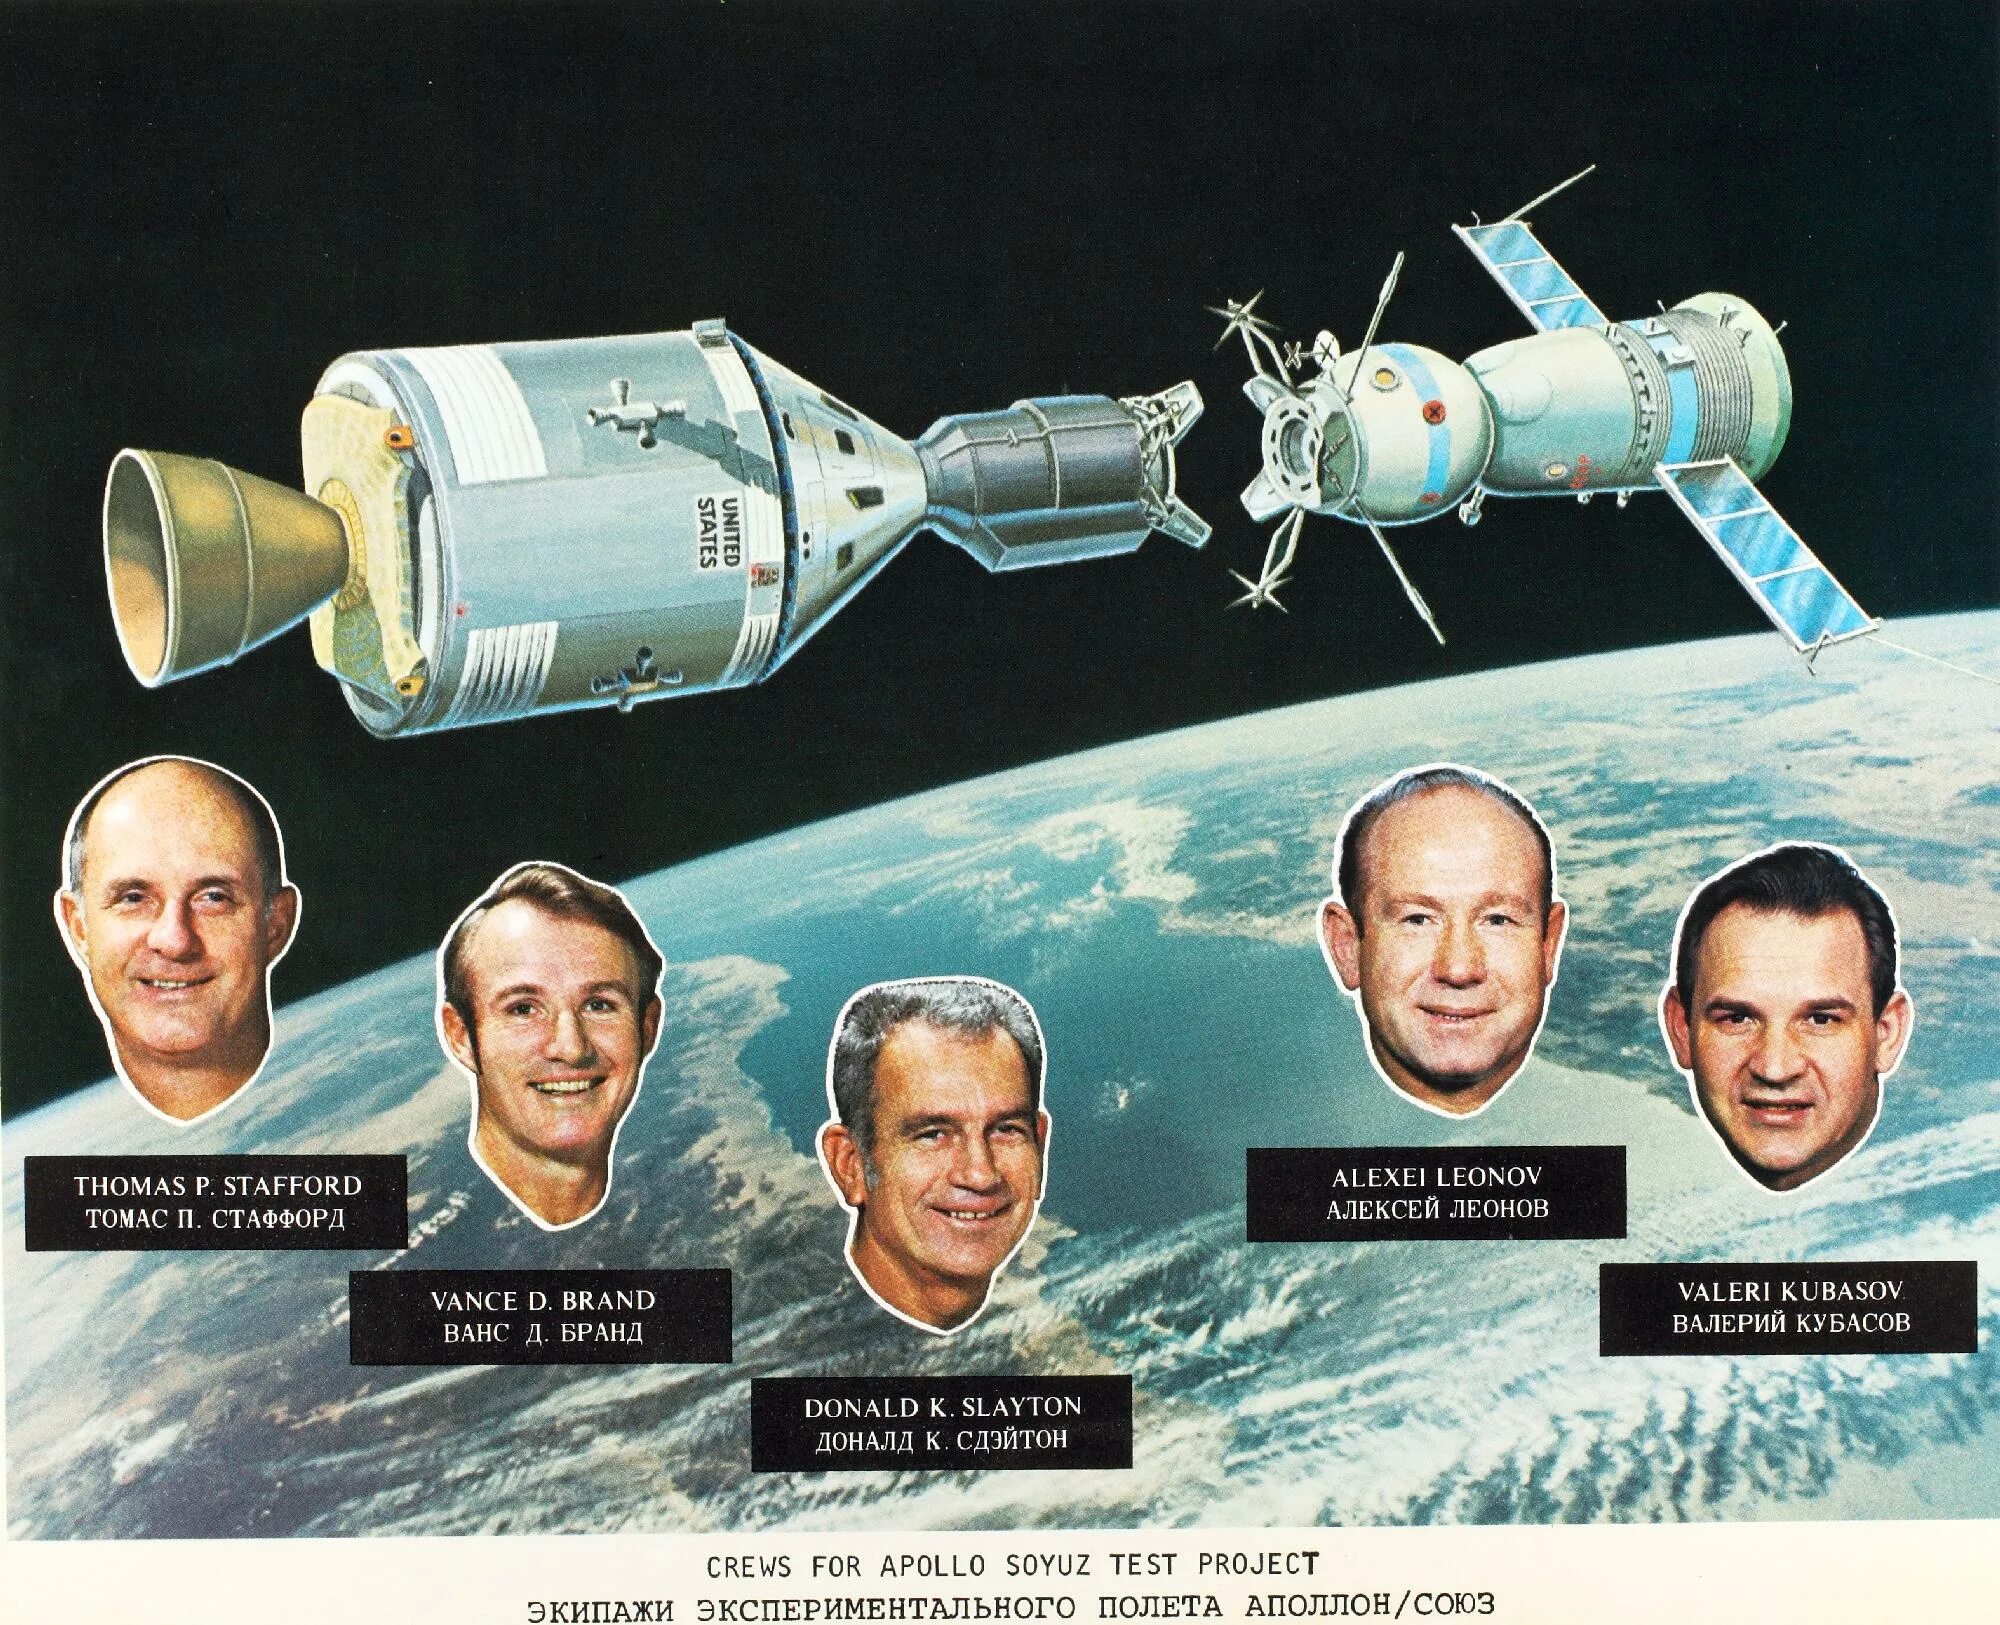 Полет Союз-Аполлон 1975. Советский корабль «Союз-19» и американский корабль «Аполлон».. Советско-американский полет в космос по программе Союз Аполлон. 1975 Стыковка кораблей Союз и Аполлон.